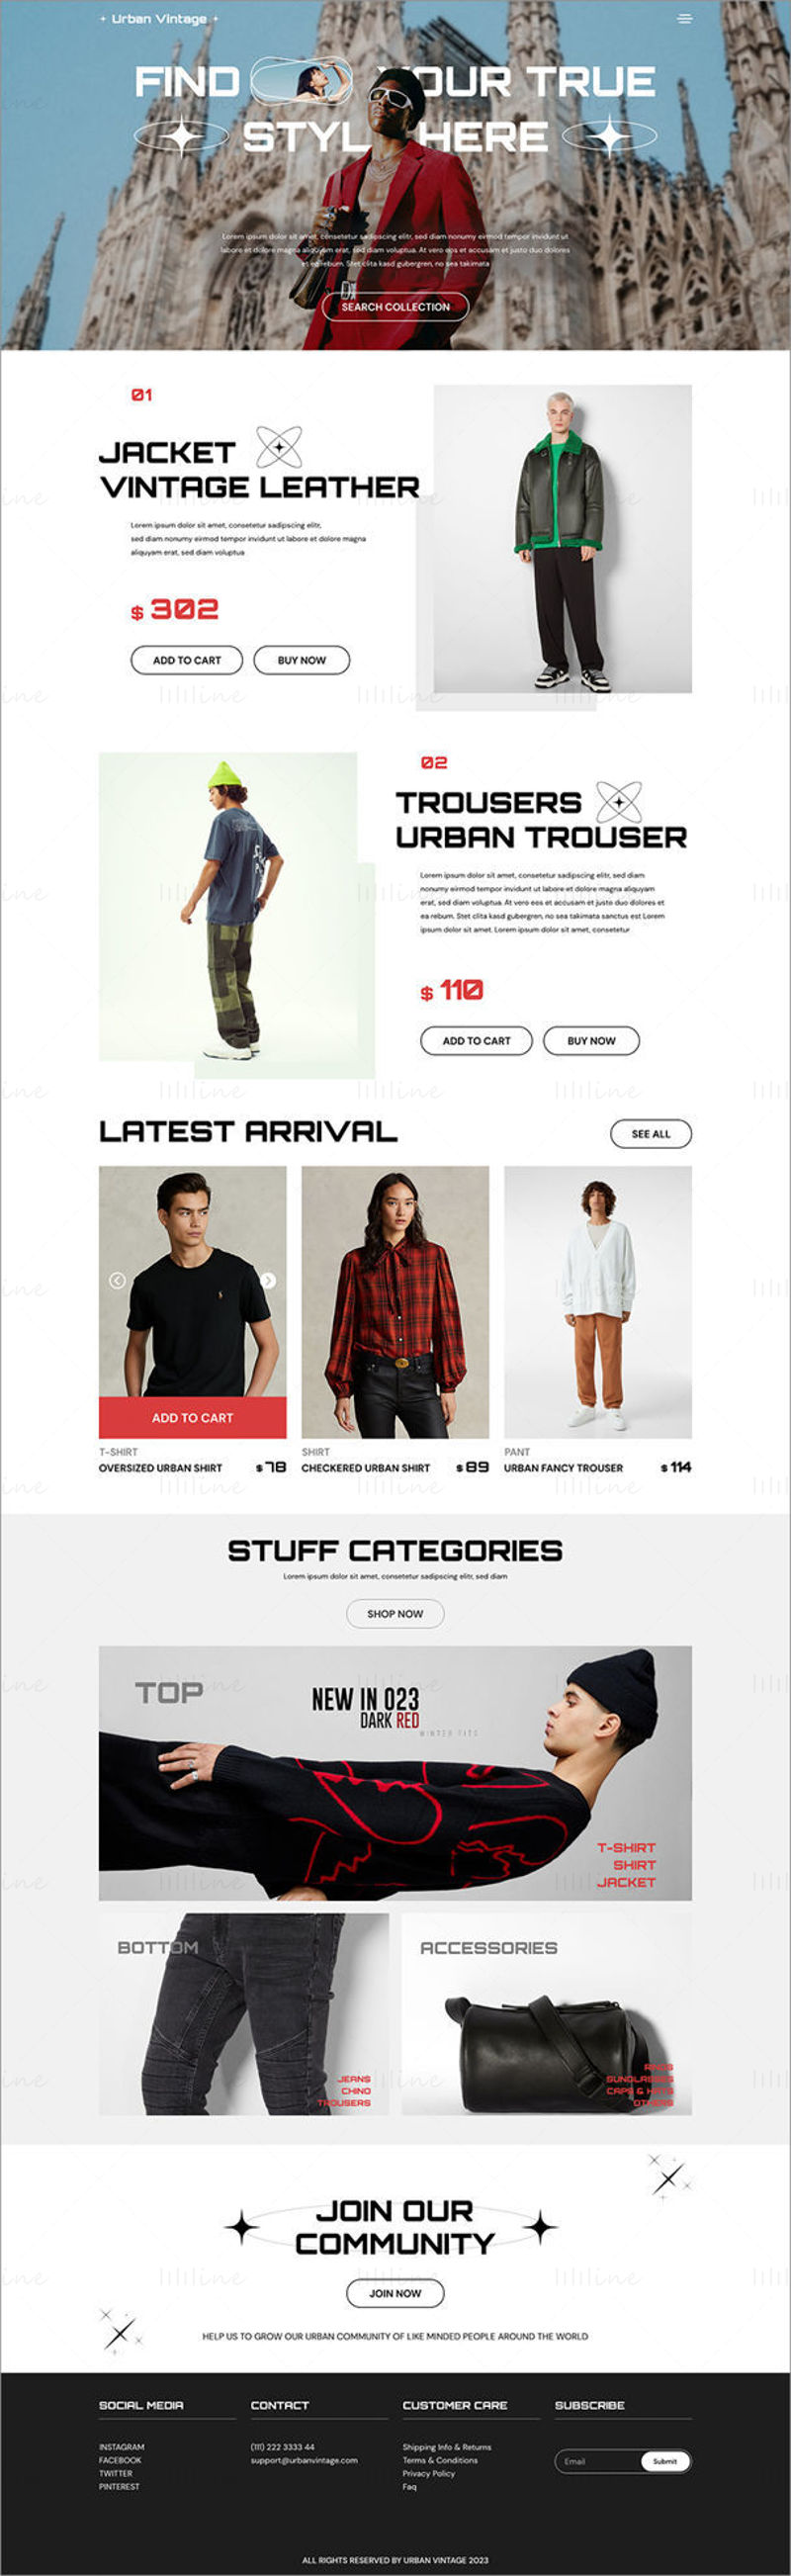 Modèle d'interface utilisateur de site Web de vente de vêtements urbains vintage - UI Adobe XD